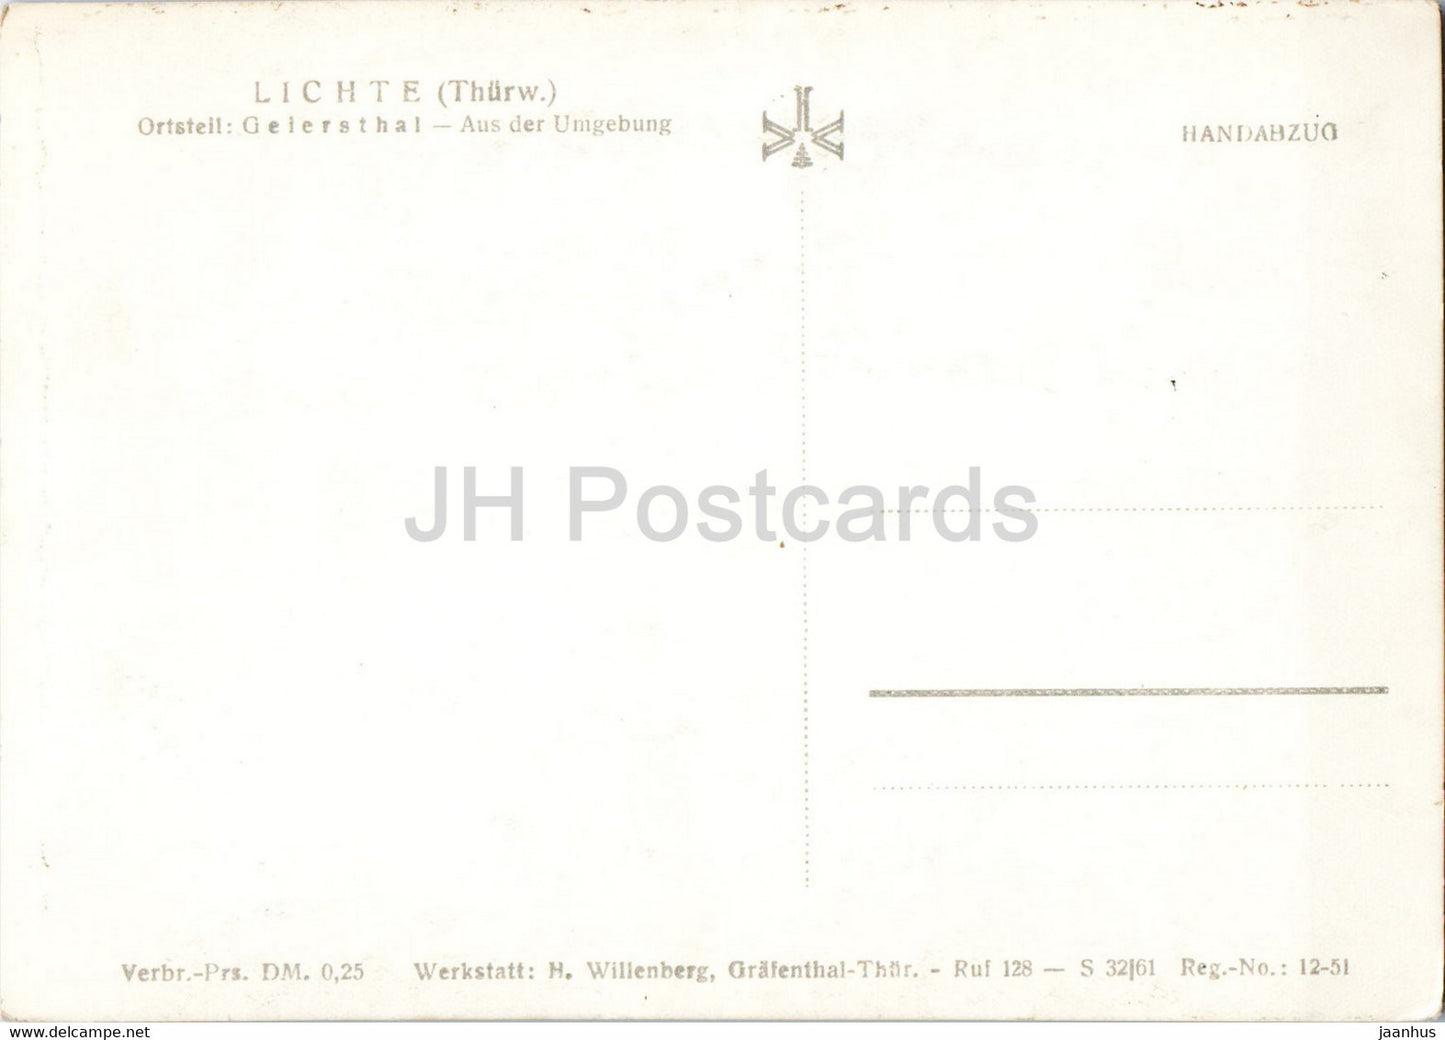 Lichte - Geiersthal - Aus der Umgebung - Thurw - old postcard - Germany DDR - unused